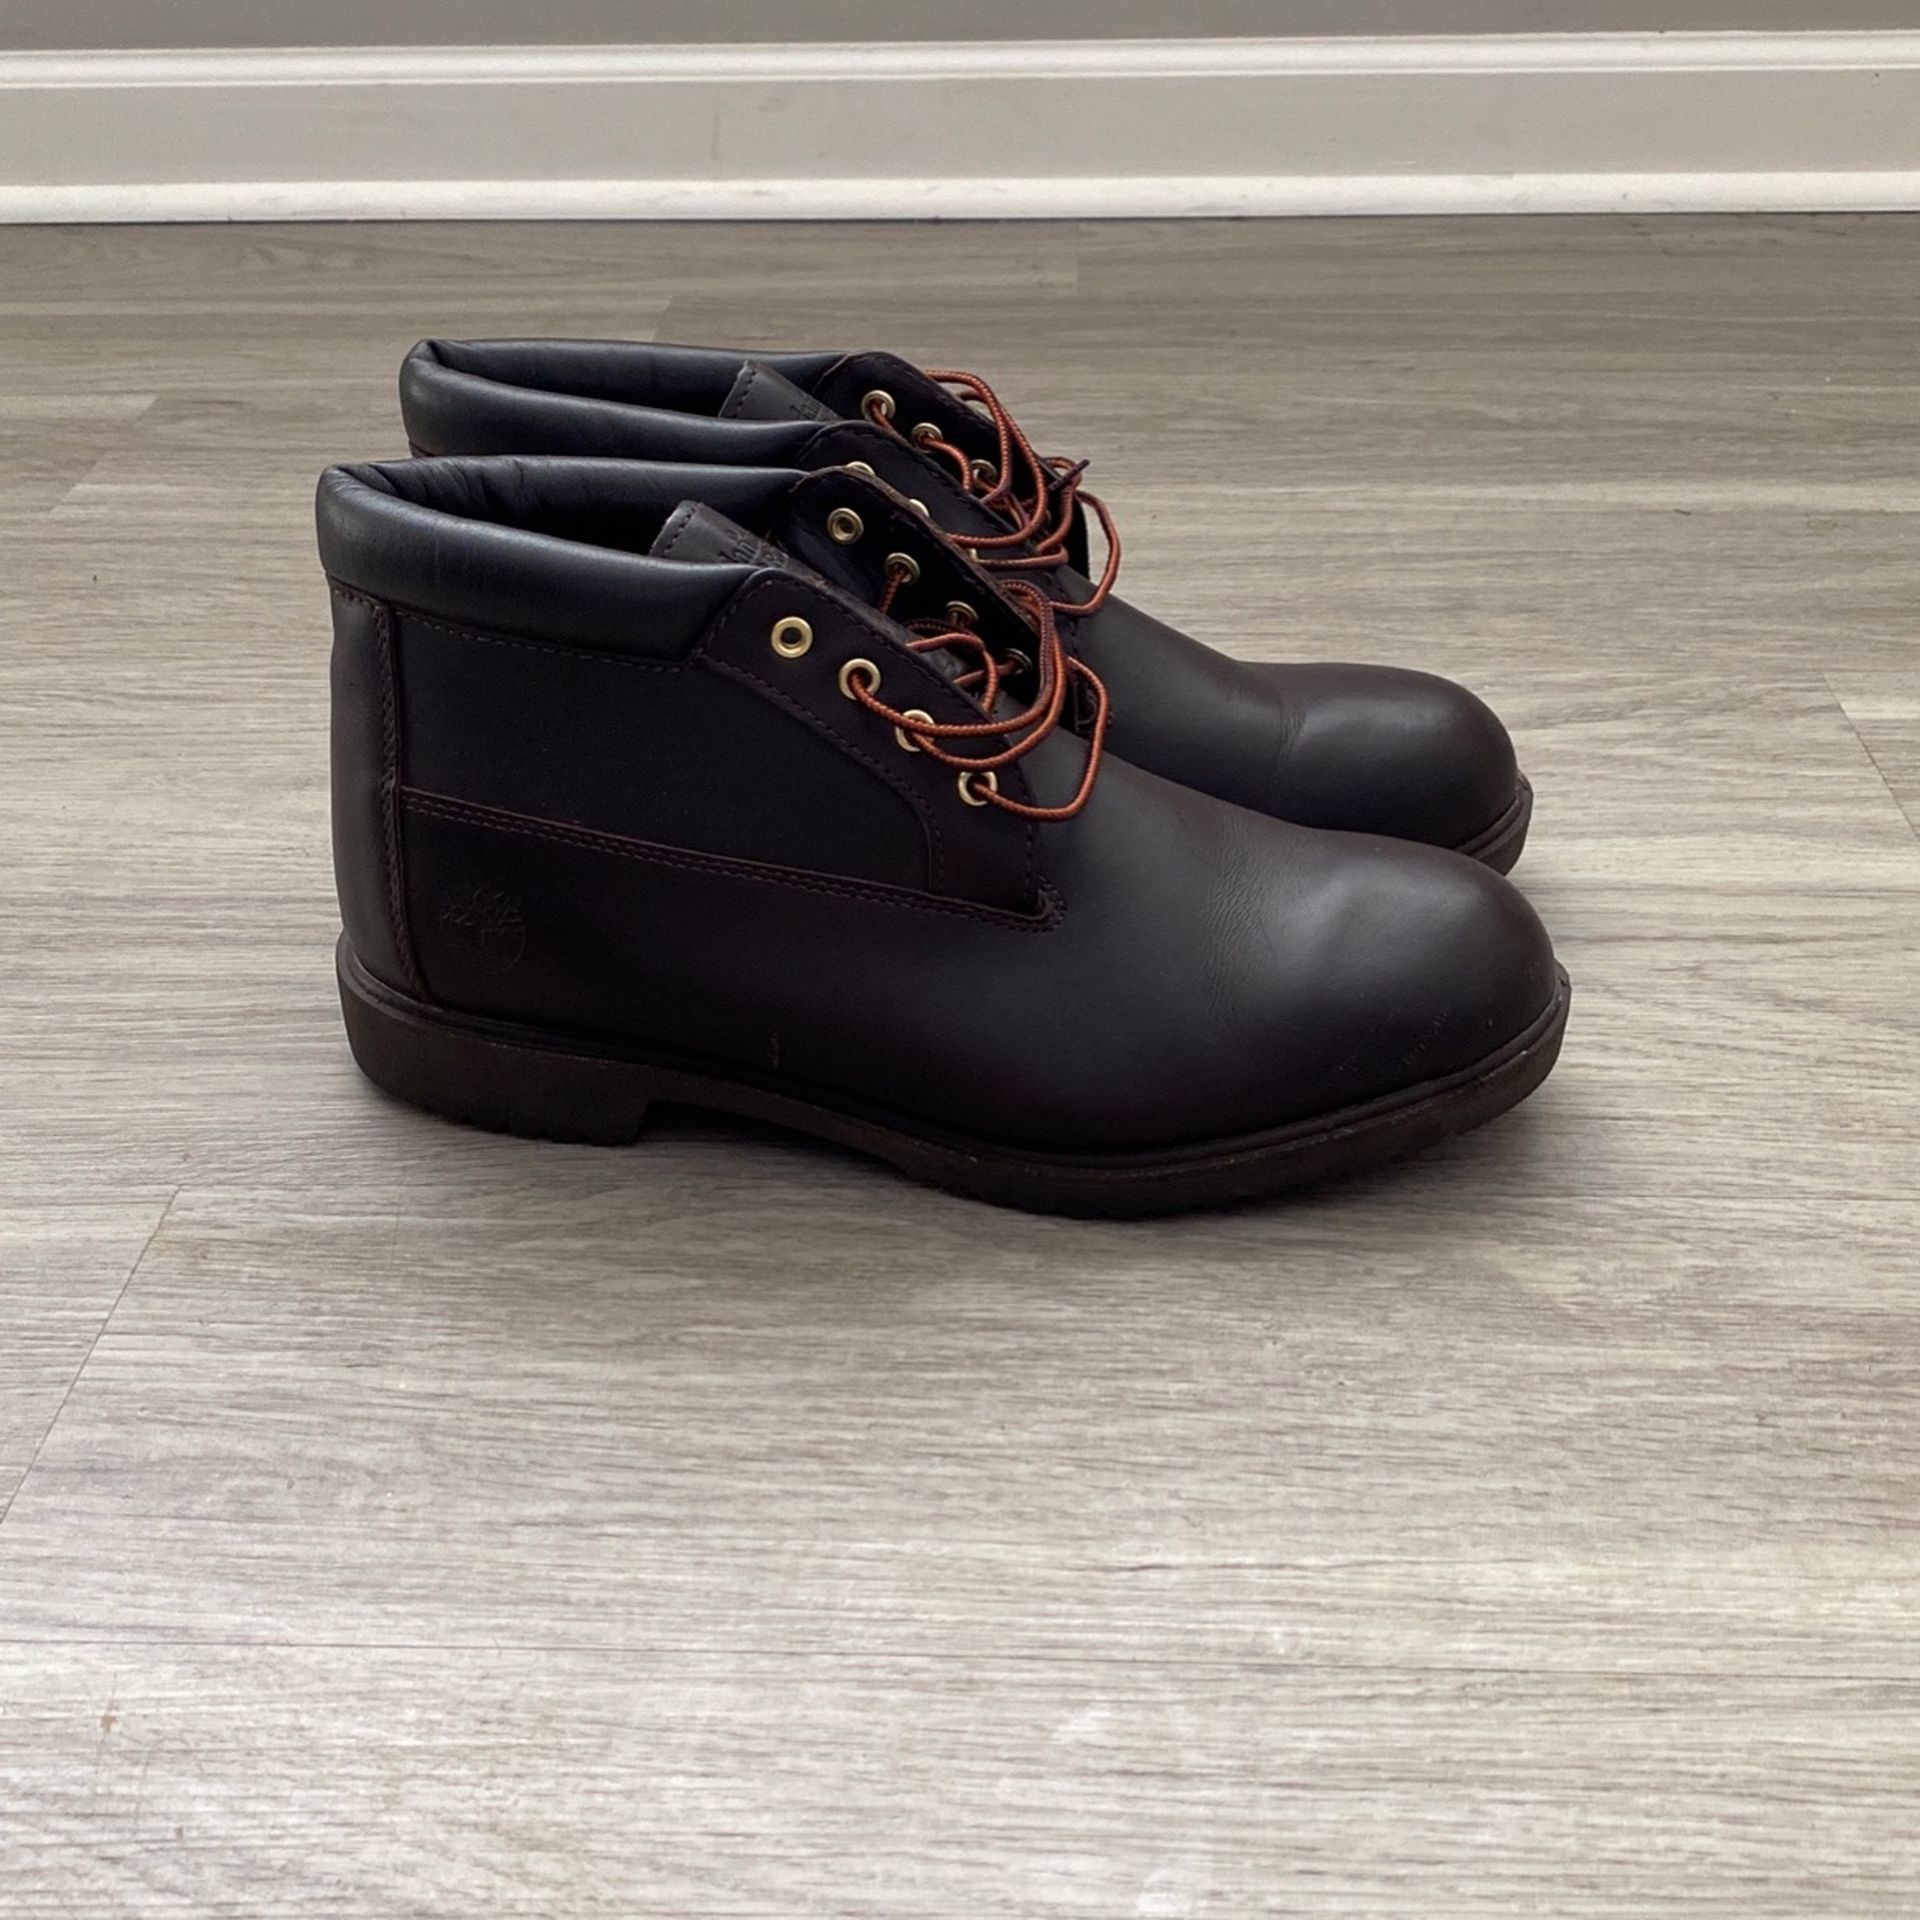 Timberland Chukka Boots Size 12